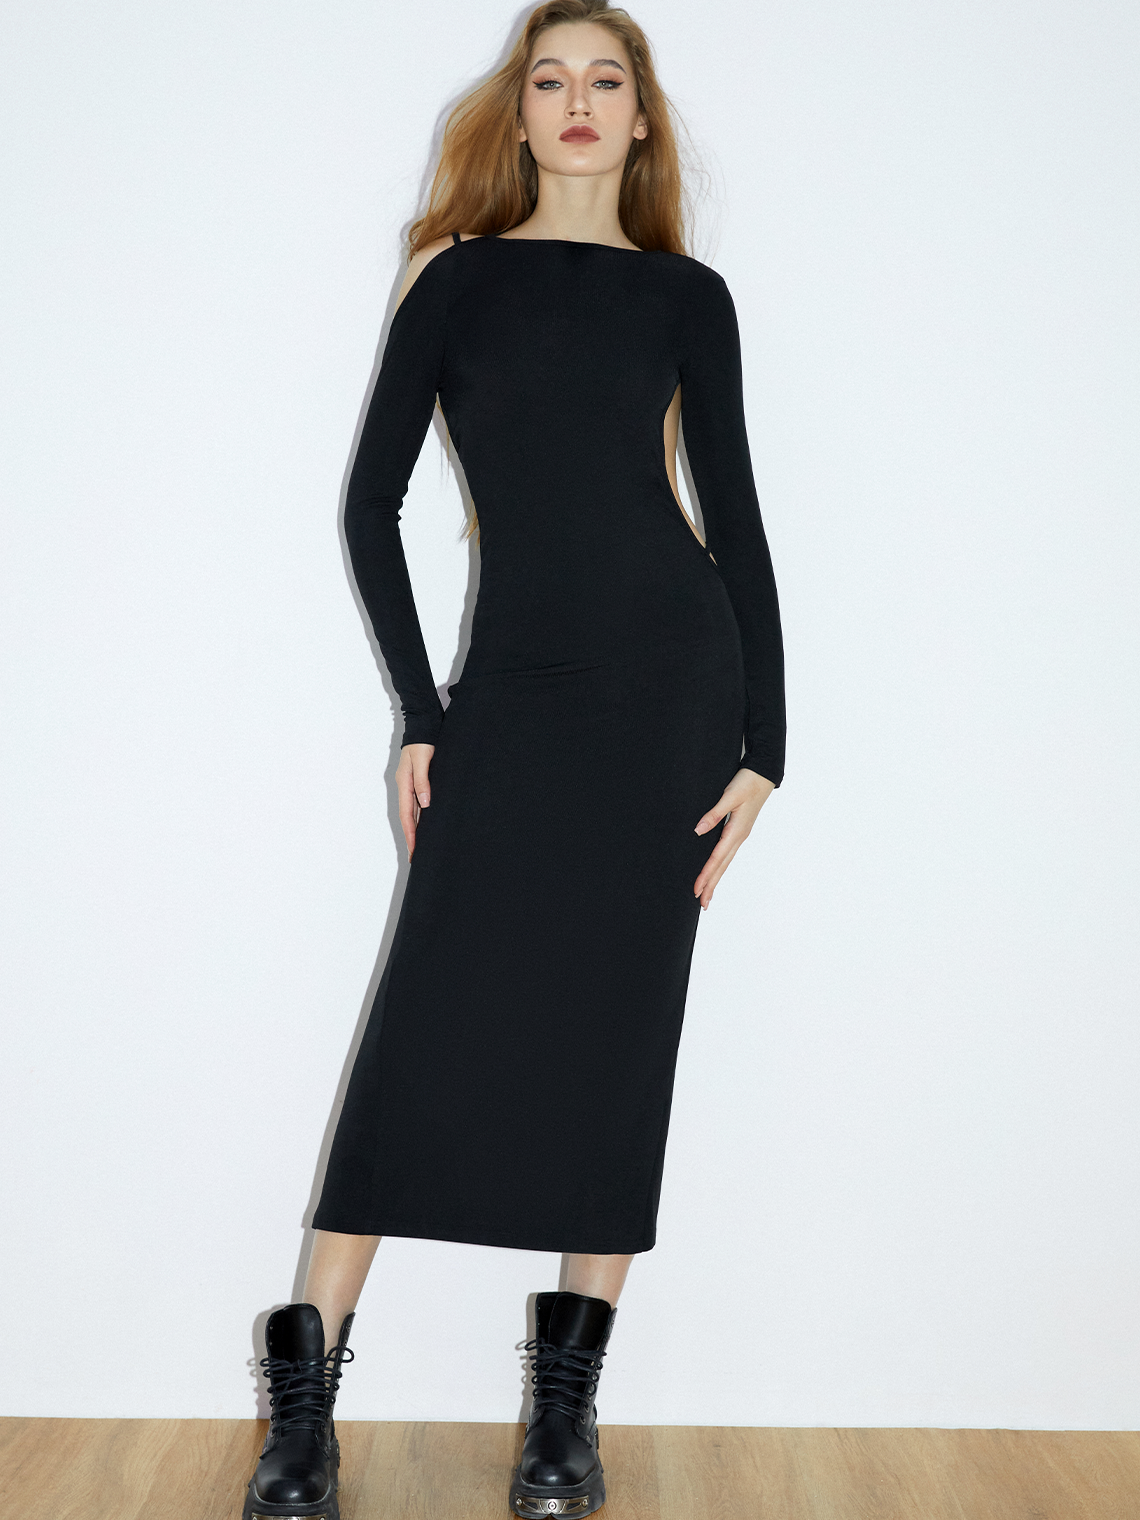 【Final Sale】Street Black Backless Dress Midi Dress